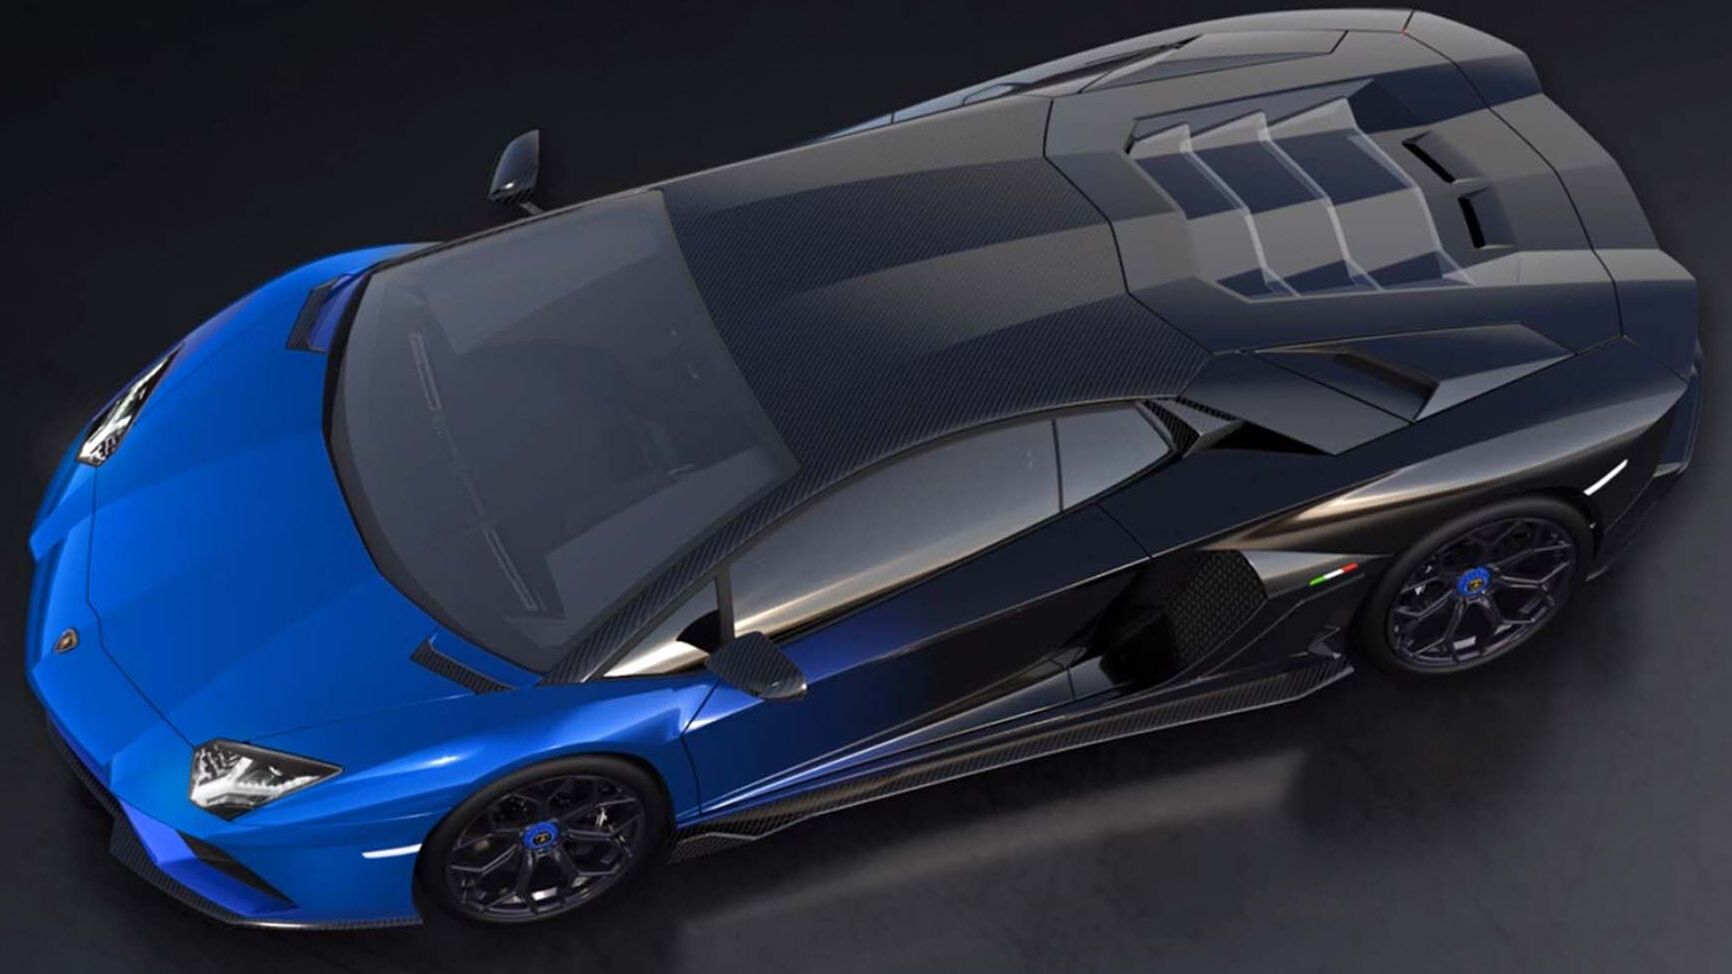 Ekskluzivni Lamborghini Aventador LP 780-4 Ultimae Coupé koji će biti uparen sa NFT 1.1 i novijim na aukciji